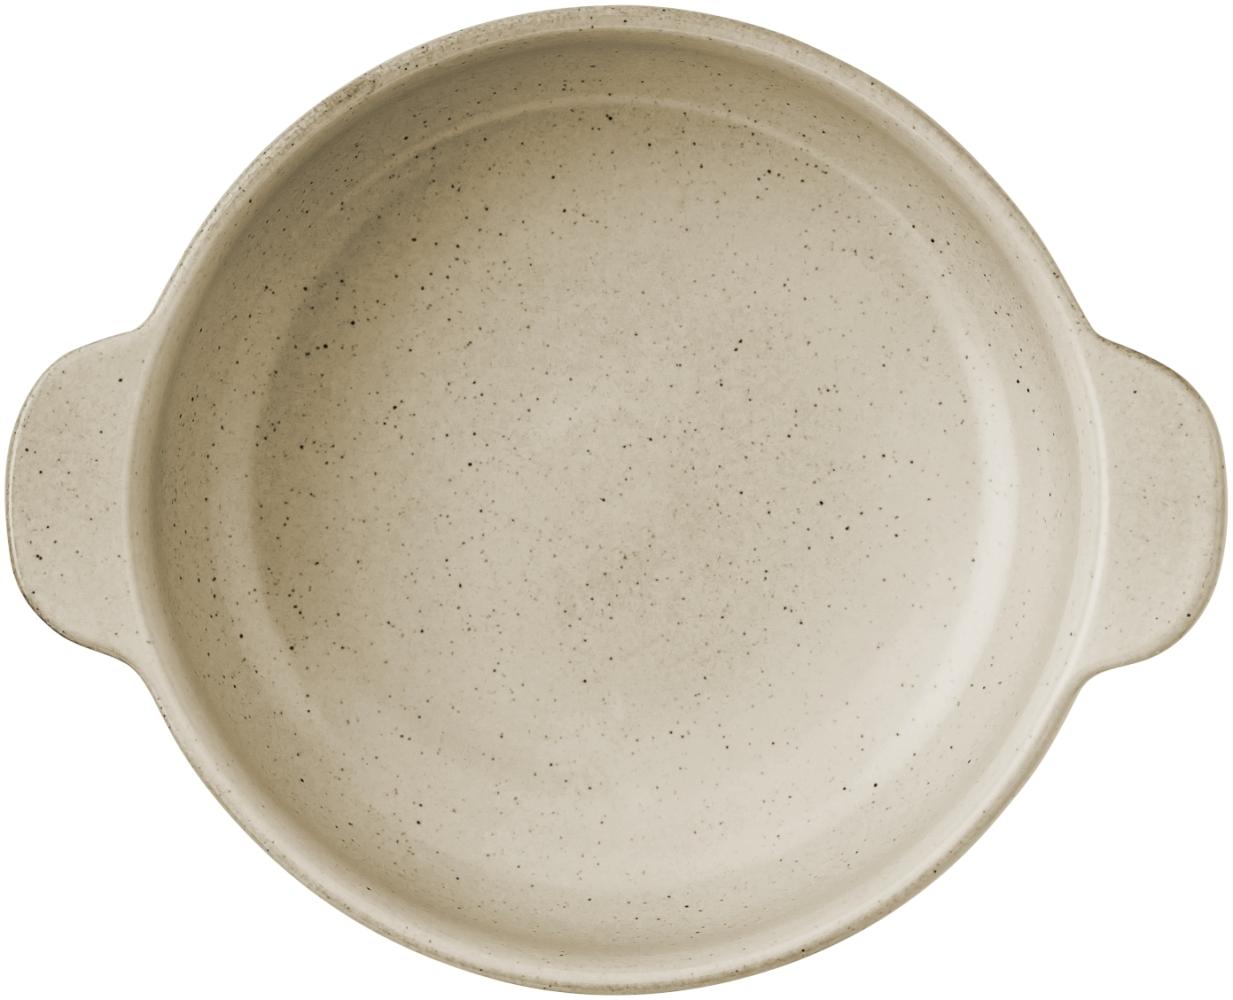 Arzberg Joyn Stoneware Sharing Bowl, Servierschüssel, Schale, Steinzeug, Ash, 20 cm, 44120-640251-61220 Bild 1